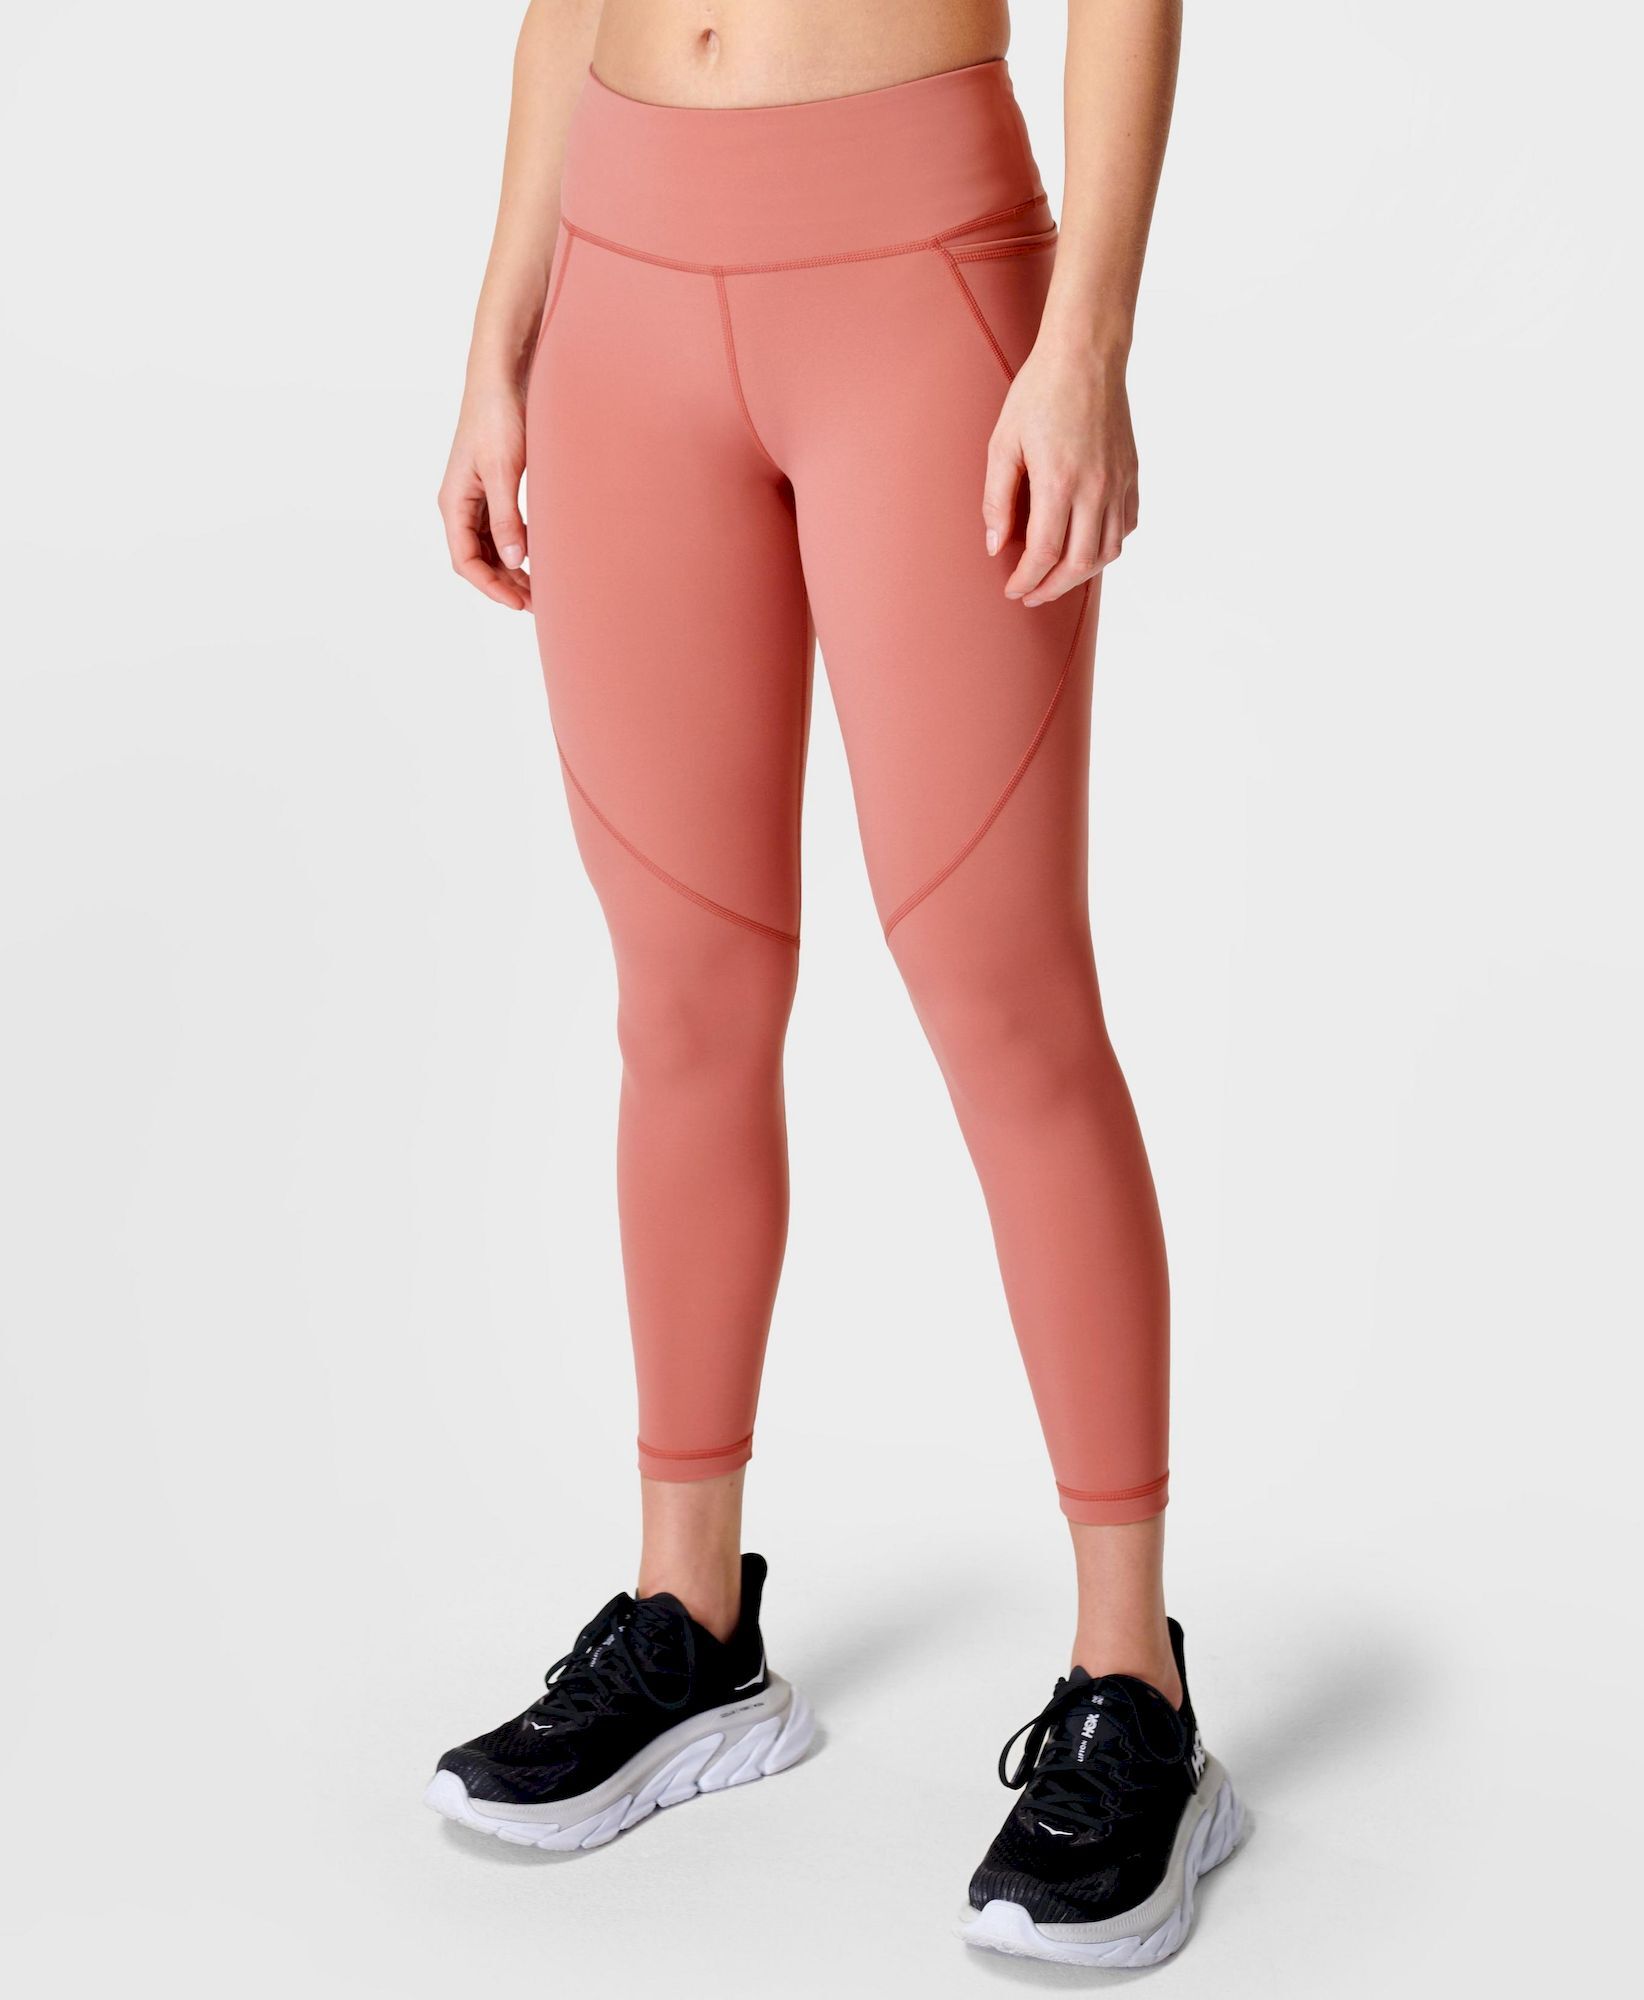 Sweaty Betty Power 7/8 Workout Leggings - Running leggings - Women's